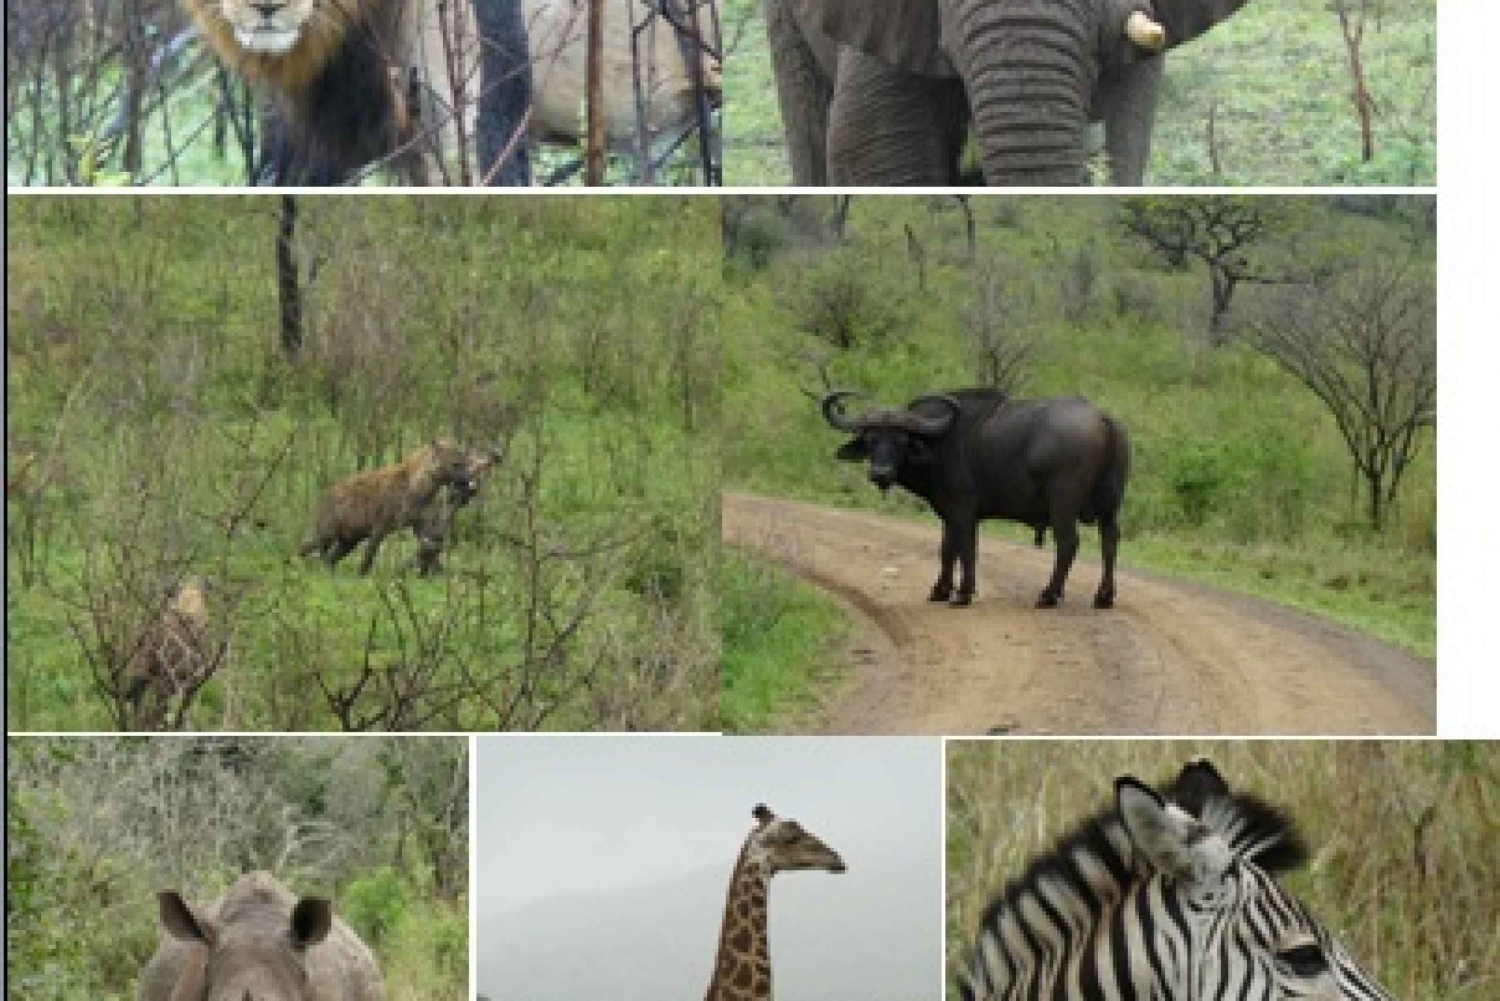 3-Day Hluhluwe Umfolozi Game Reserve & St. Lucia Safari